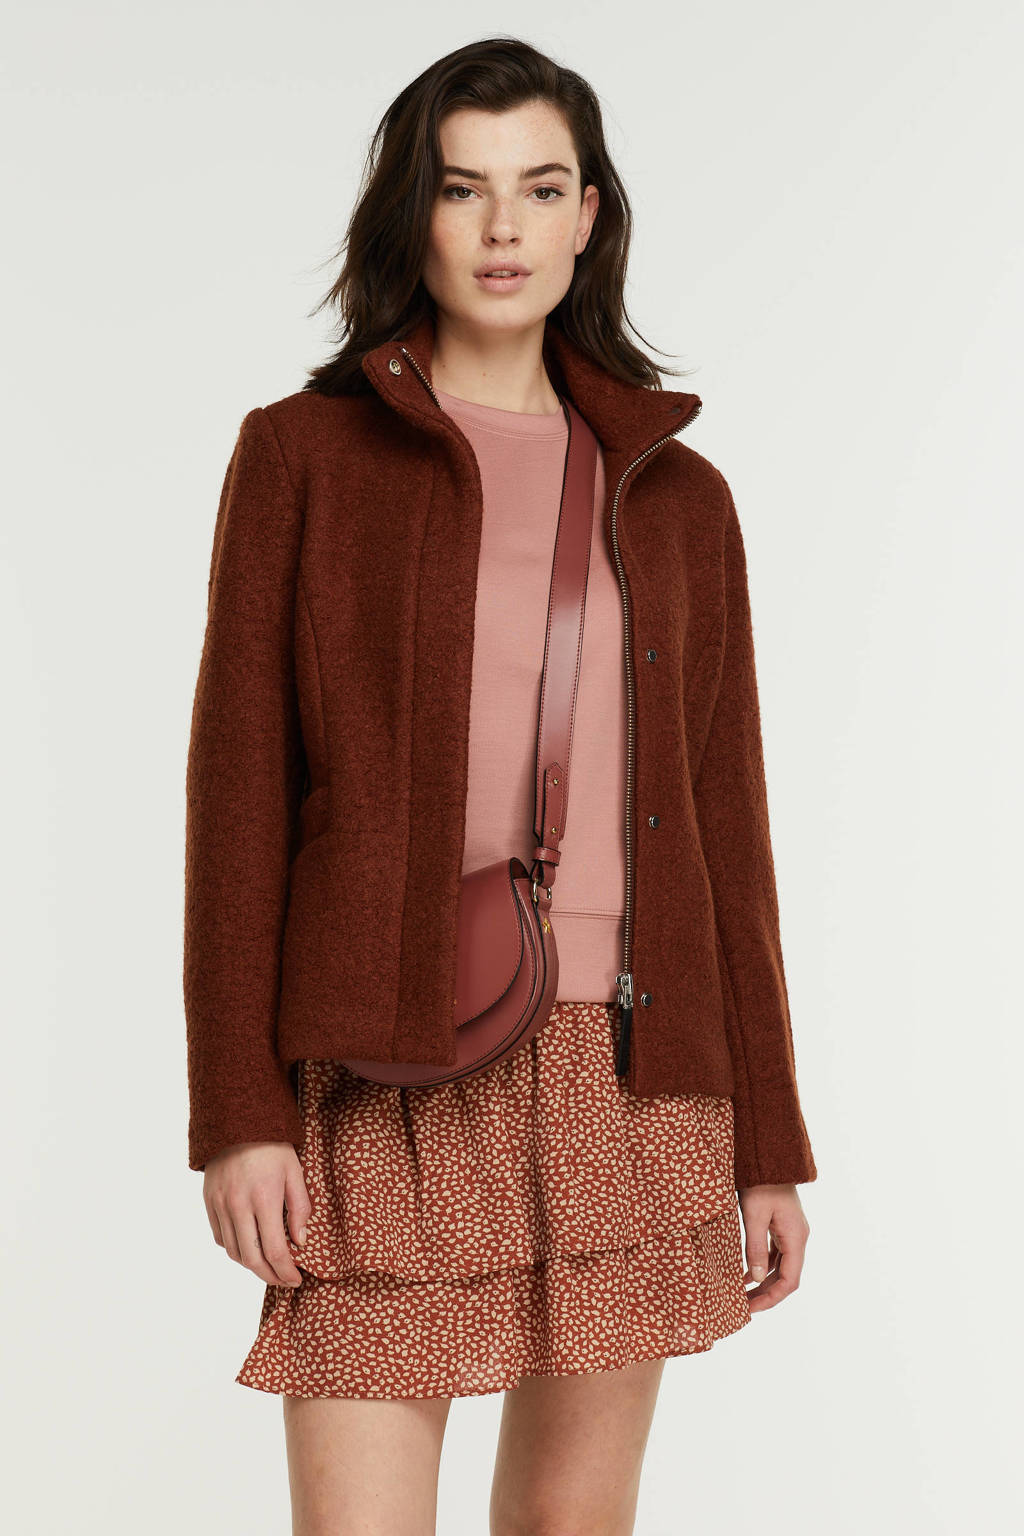 Brique dames Giacomo coat van wol met lange mouwen, opstaande kraag, rits- en drukknoopsluiting en textuur